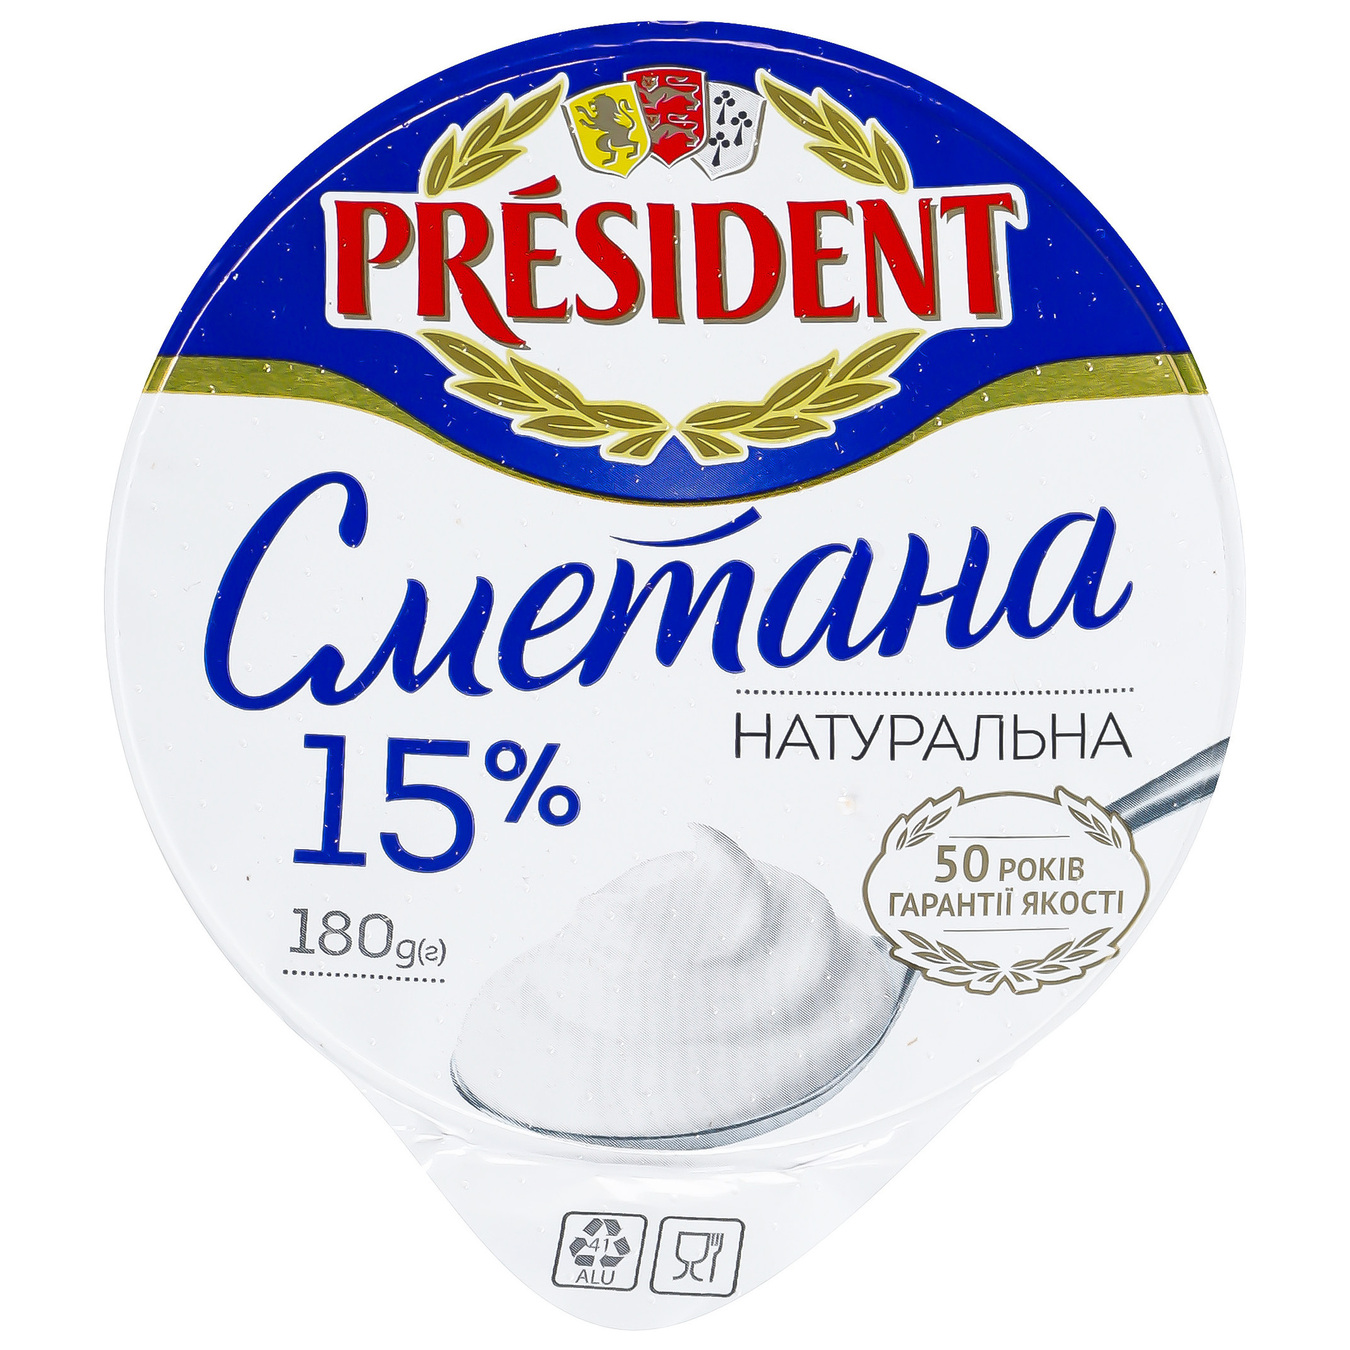 President Sour Cream 15% 180g 5